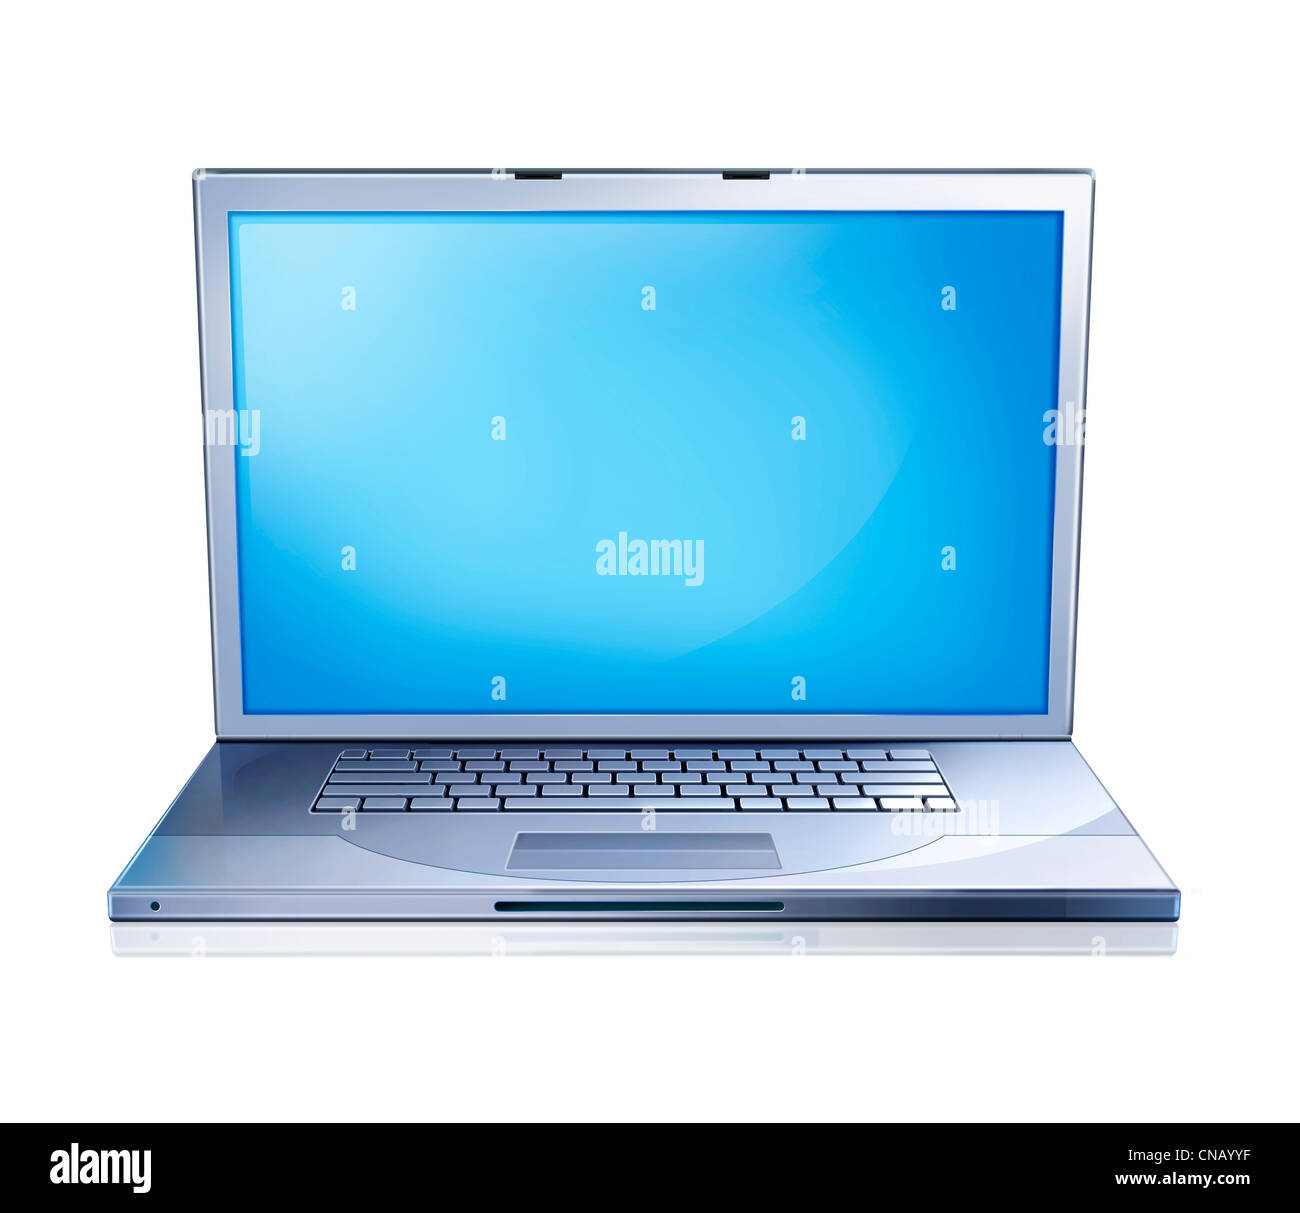 Abbildung von einem Laptop Notebook, von vorne, mit Bluescreen gesehen. Auf weißem Hintergrund, mit Clipping-Pfad enthalten. Stockfoto